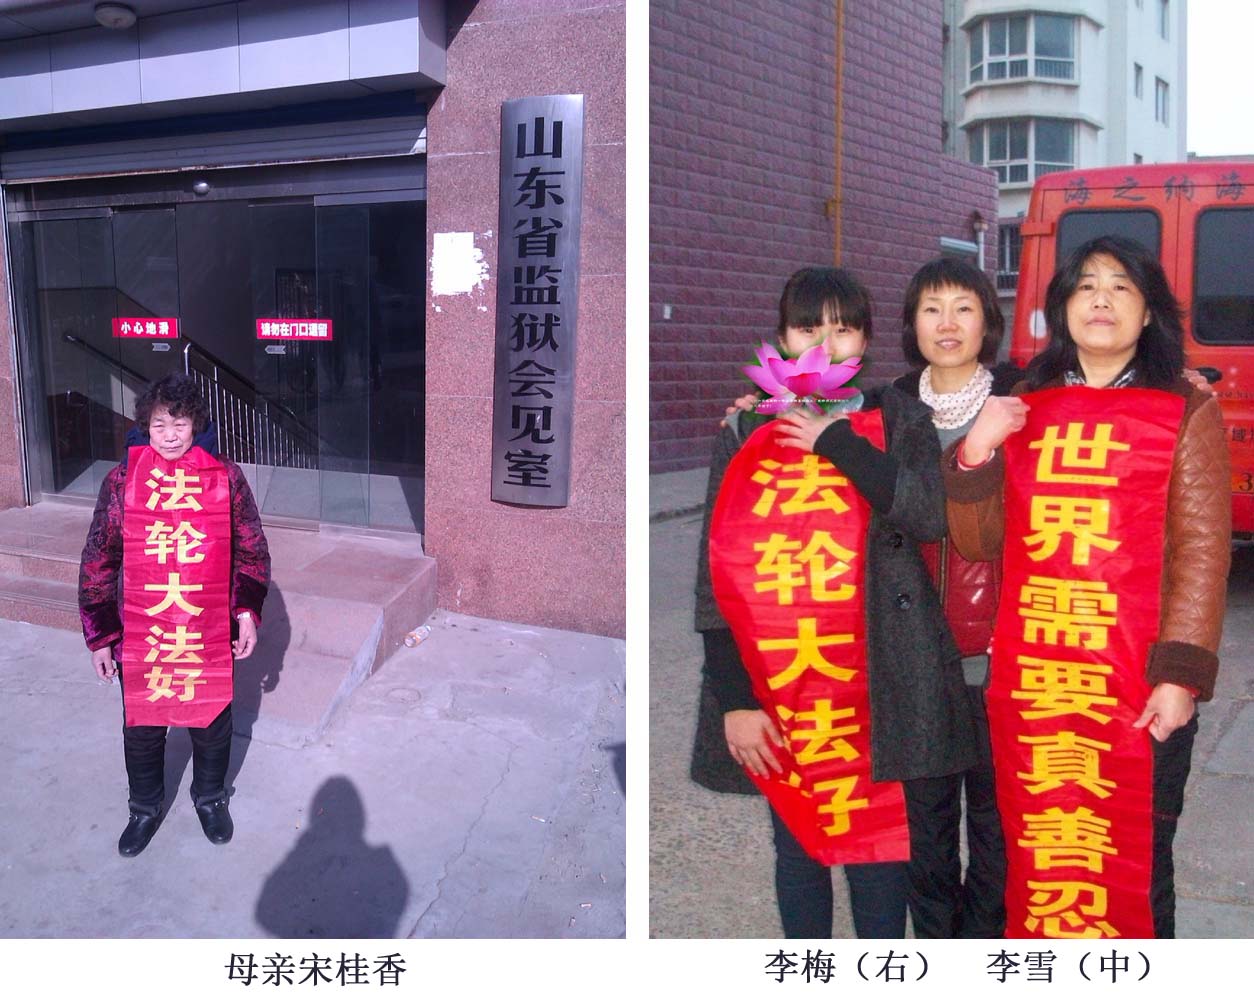 Image for article Seorang Ibu dan Putrinya Ditahan Karena Menuntut Jiang Zemin si Mantan Diktator - Keduanya Dalam Kondisi Memprihatinkan